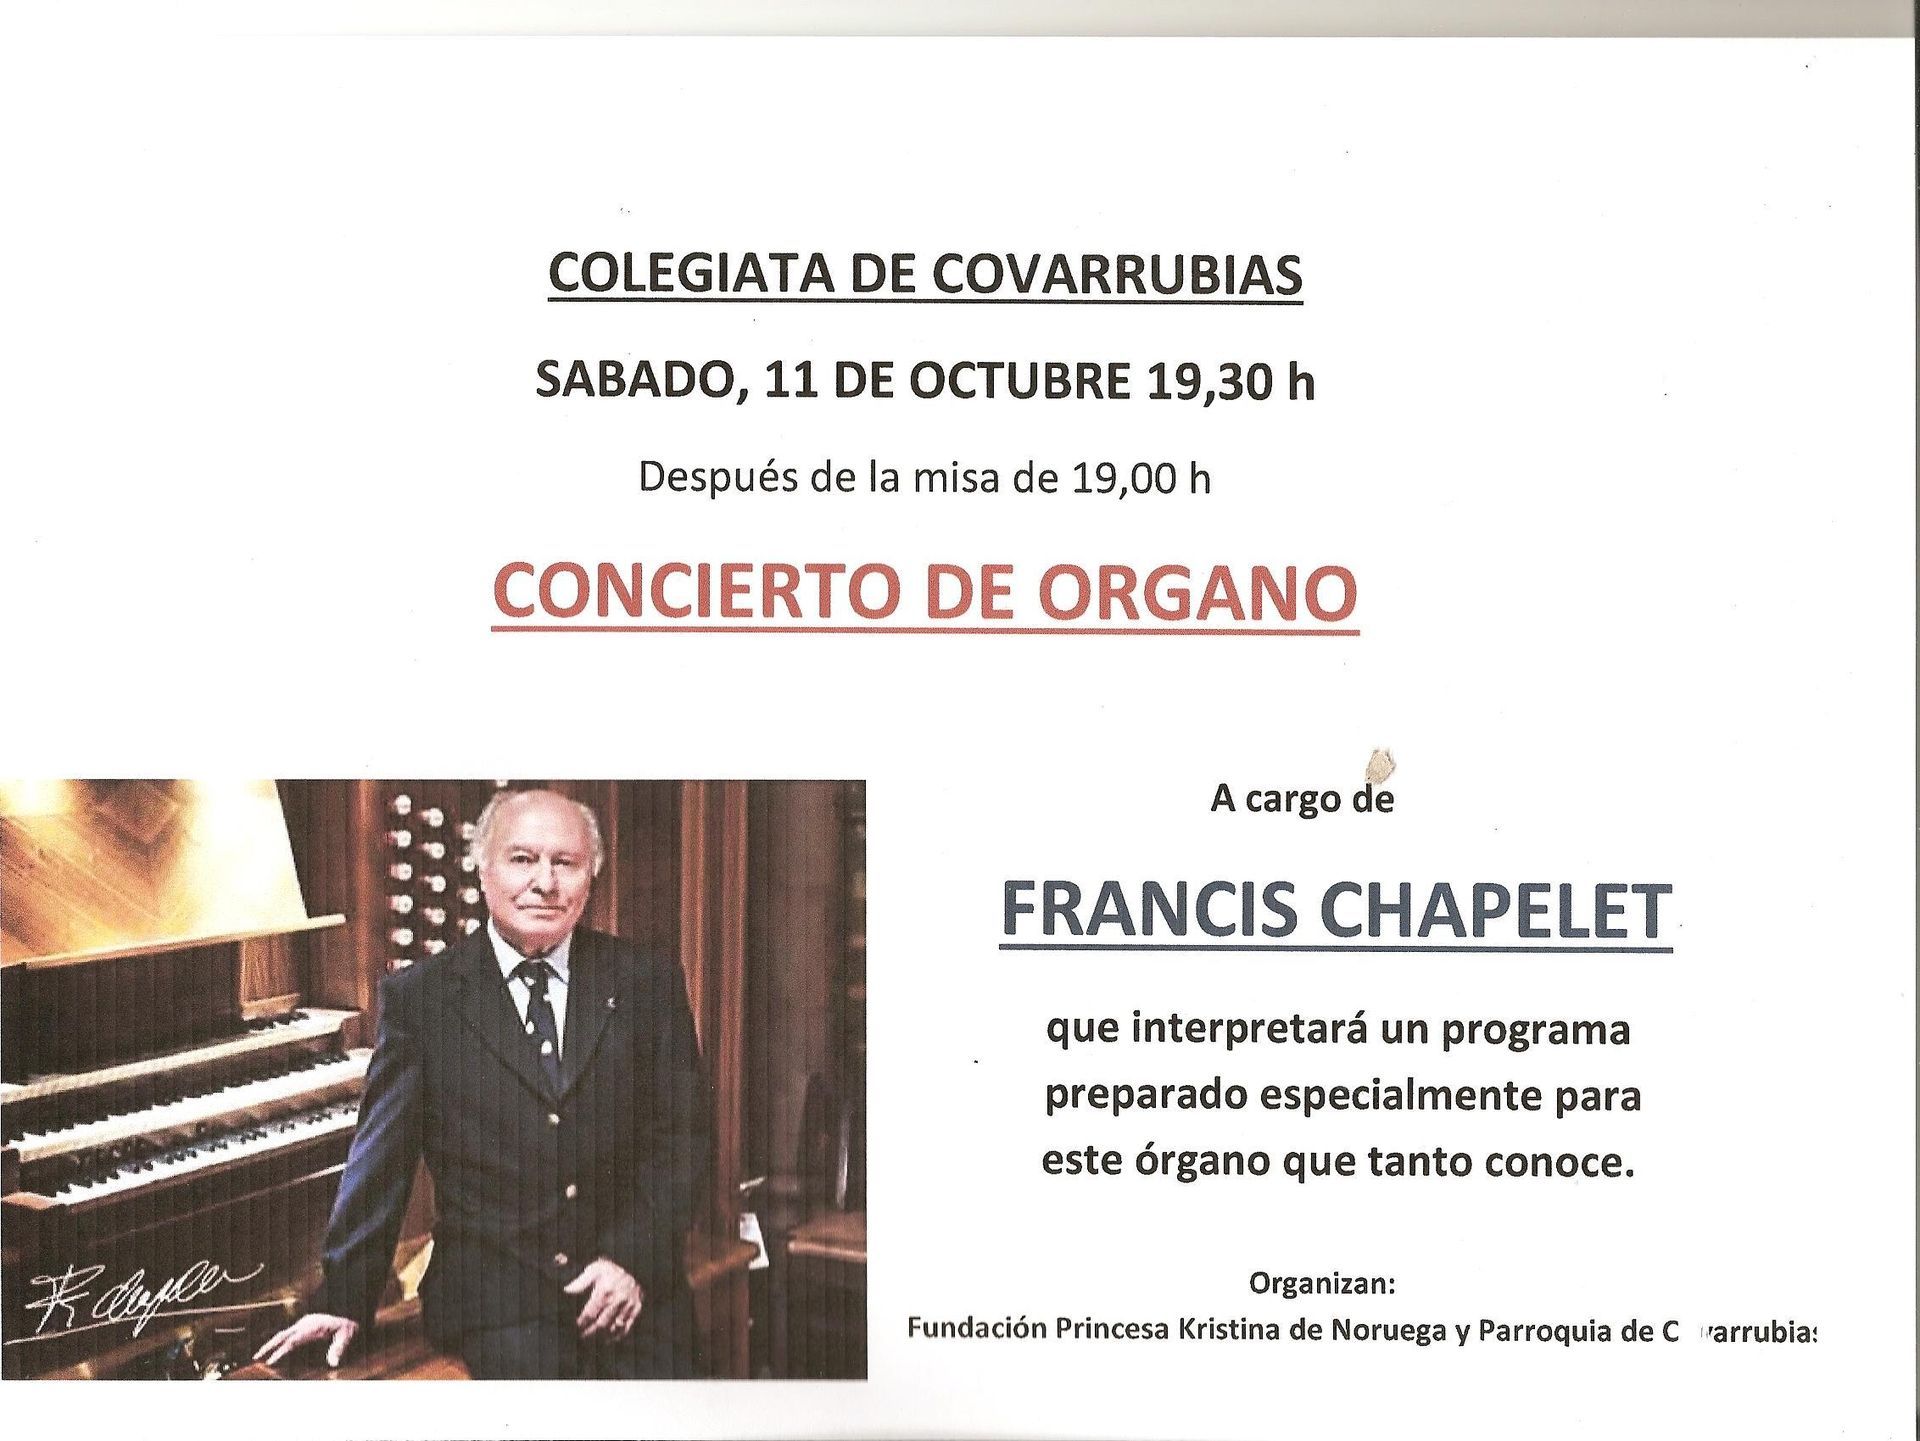 Concierto de órgano - Francis CHAPELET